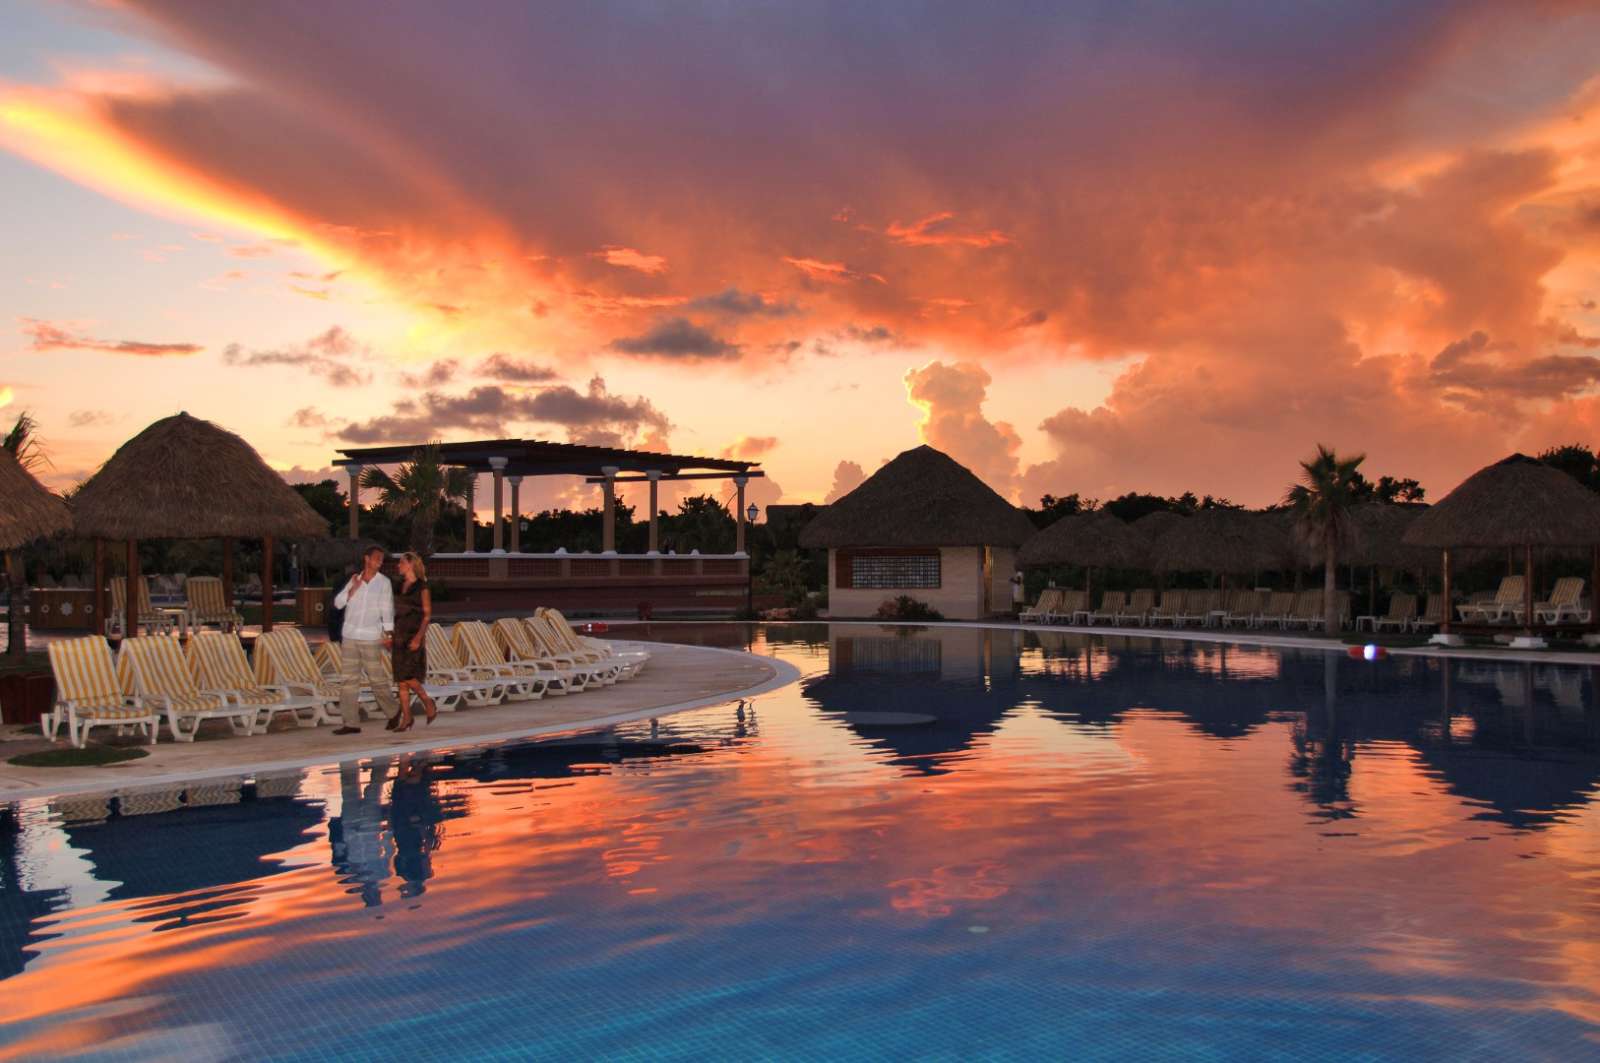 Iberostar Varadero pool at sunset